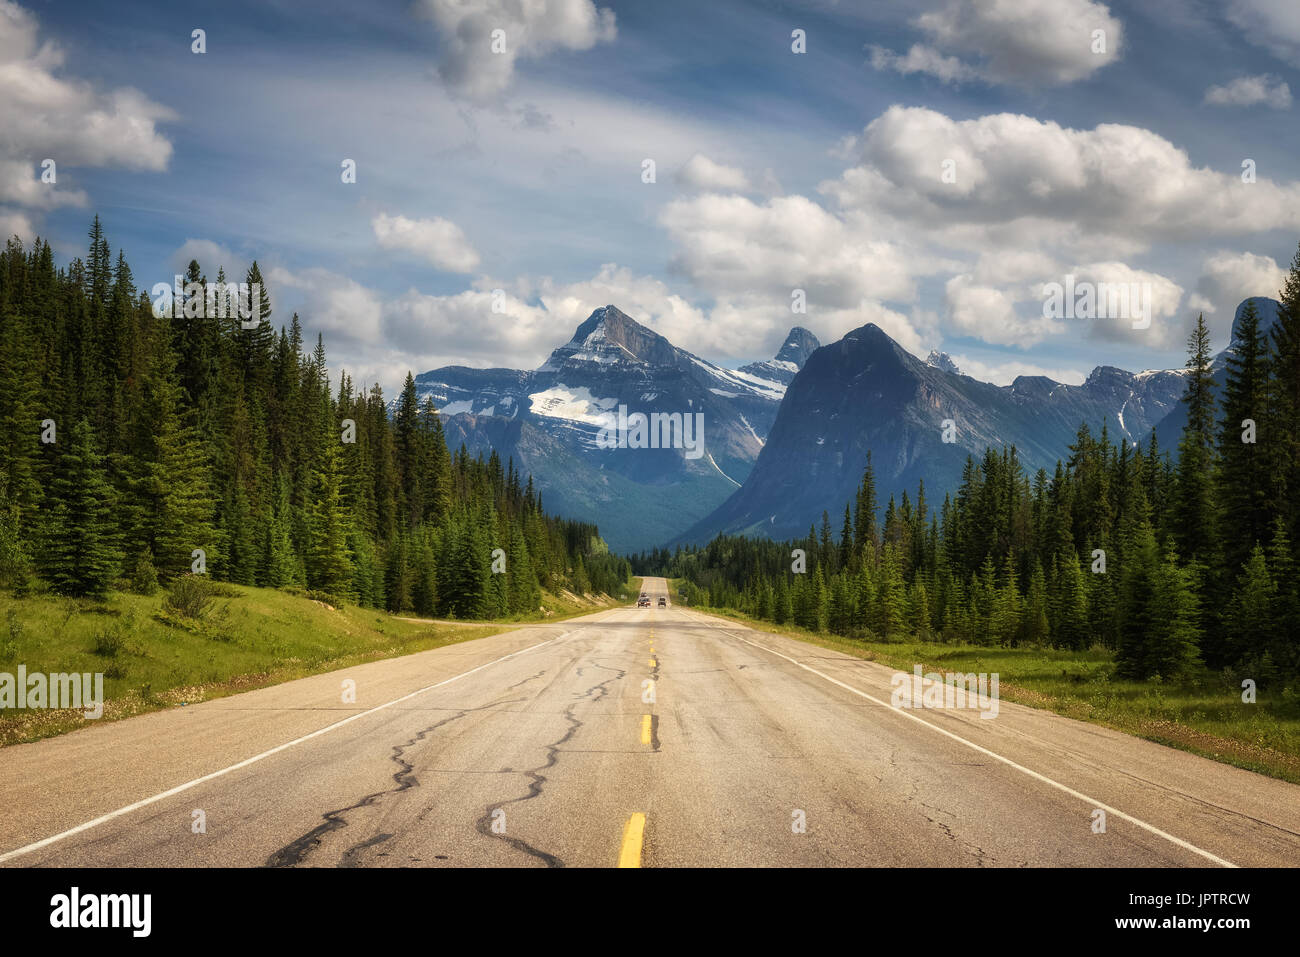 Vista panorámica de la carretera y de los Rockies canadienses sobre la carretera Icefields Parkway. Viaja a través de los Parques Nacionales de Banff y Jasper y ofrece espectaculares vistas de Foto de stock